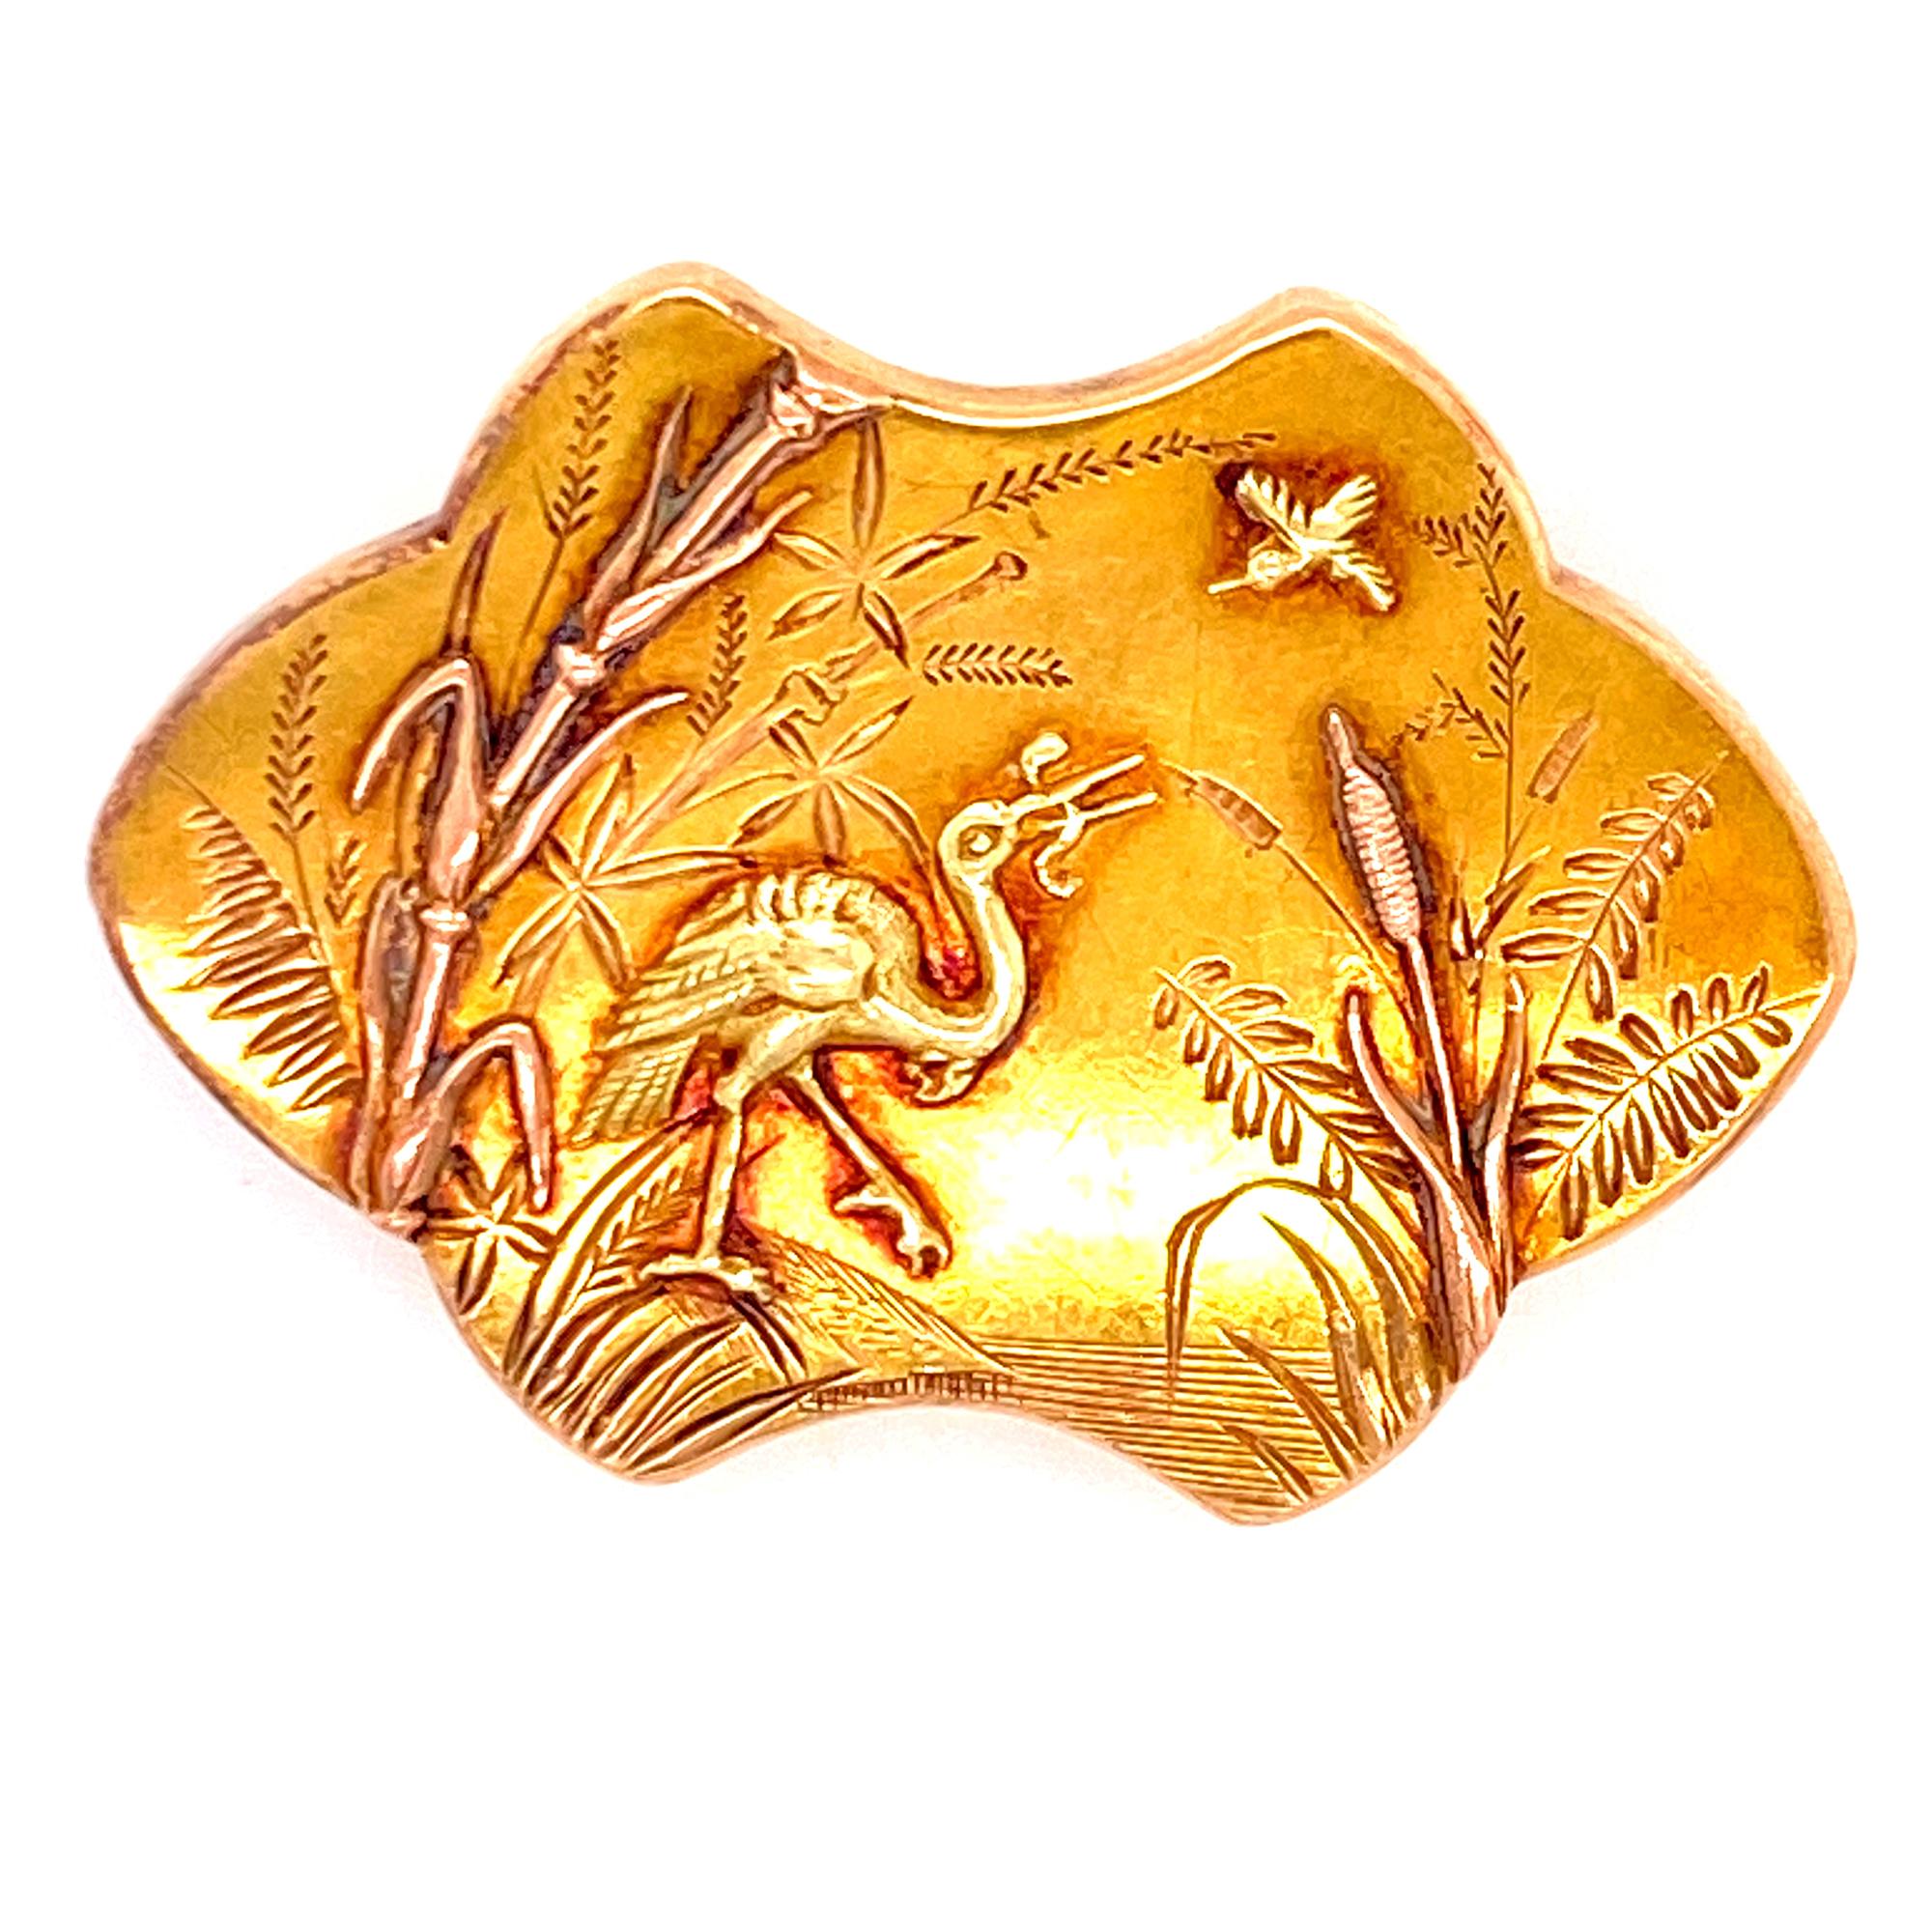 Women's Art Nouveau 18 Karat Yellow Gold Brooch Pin